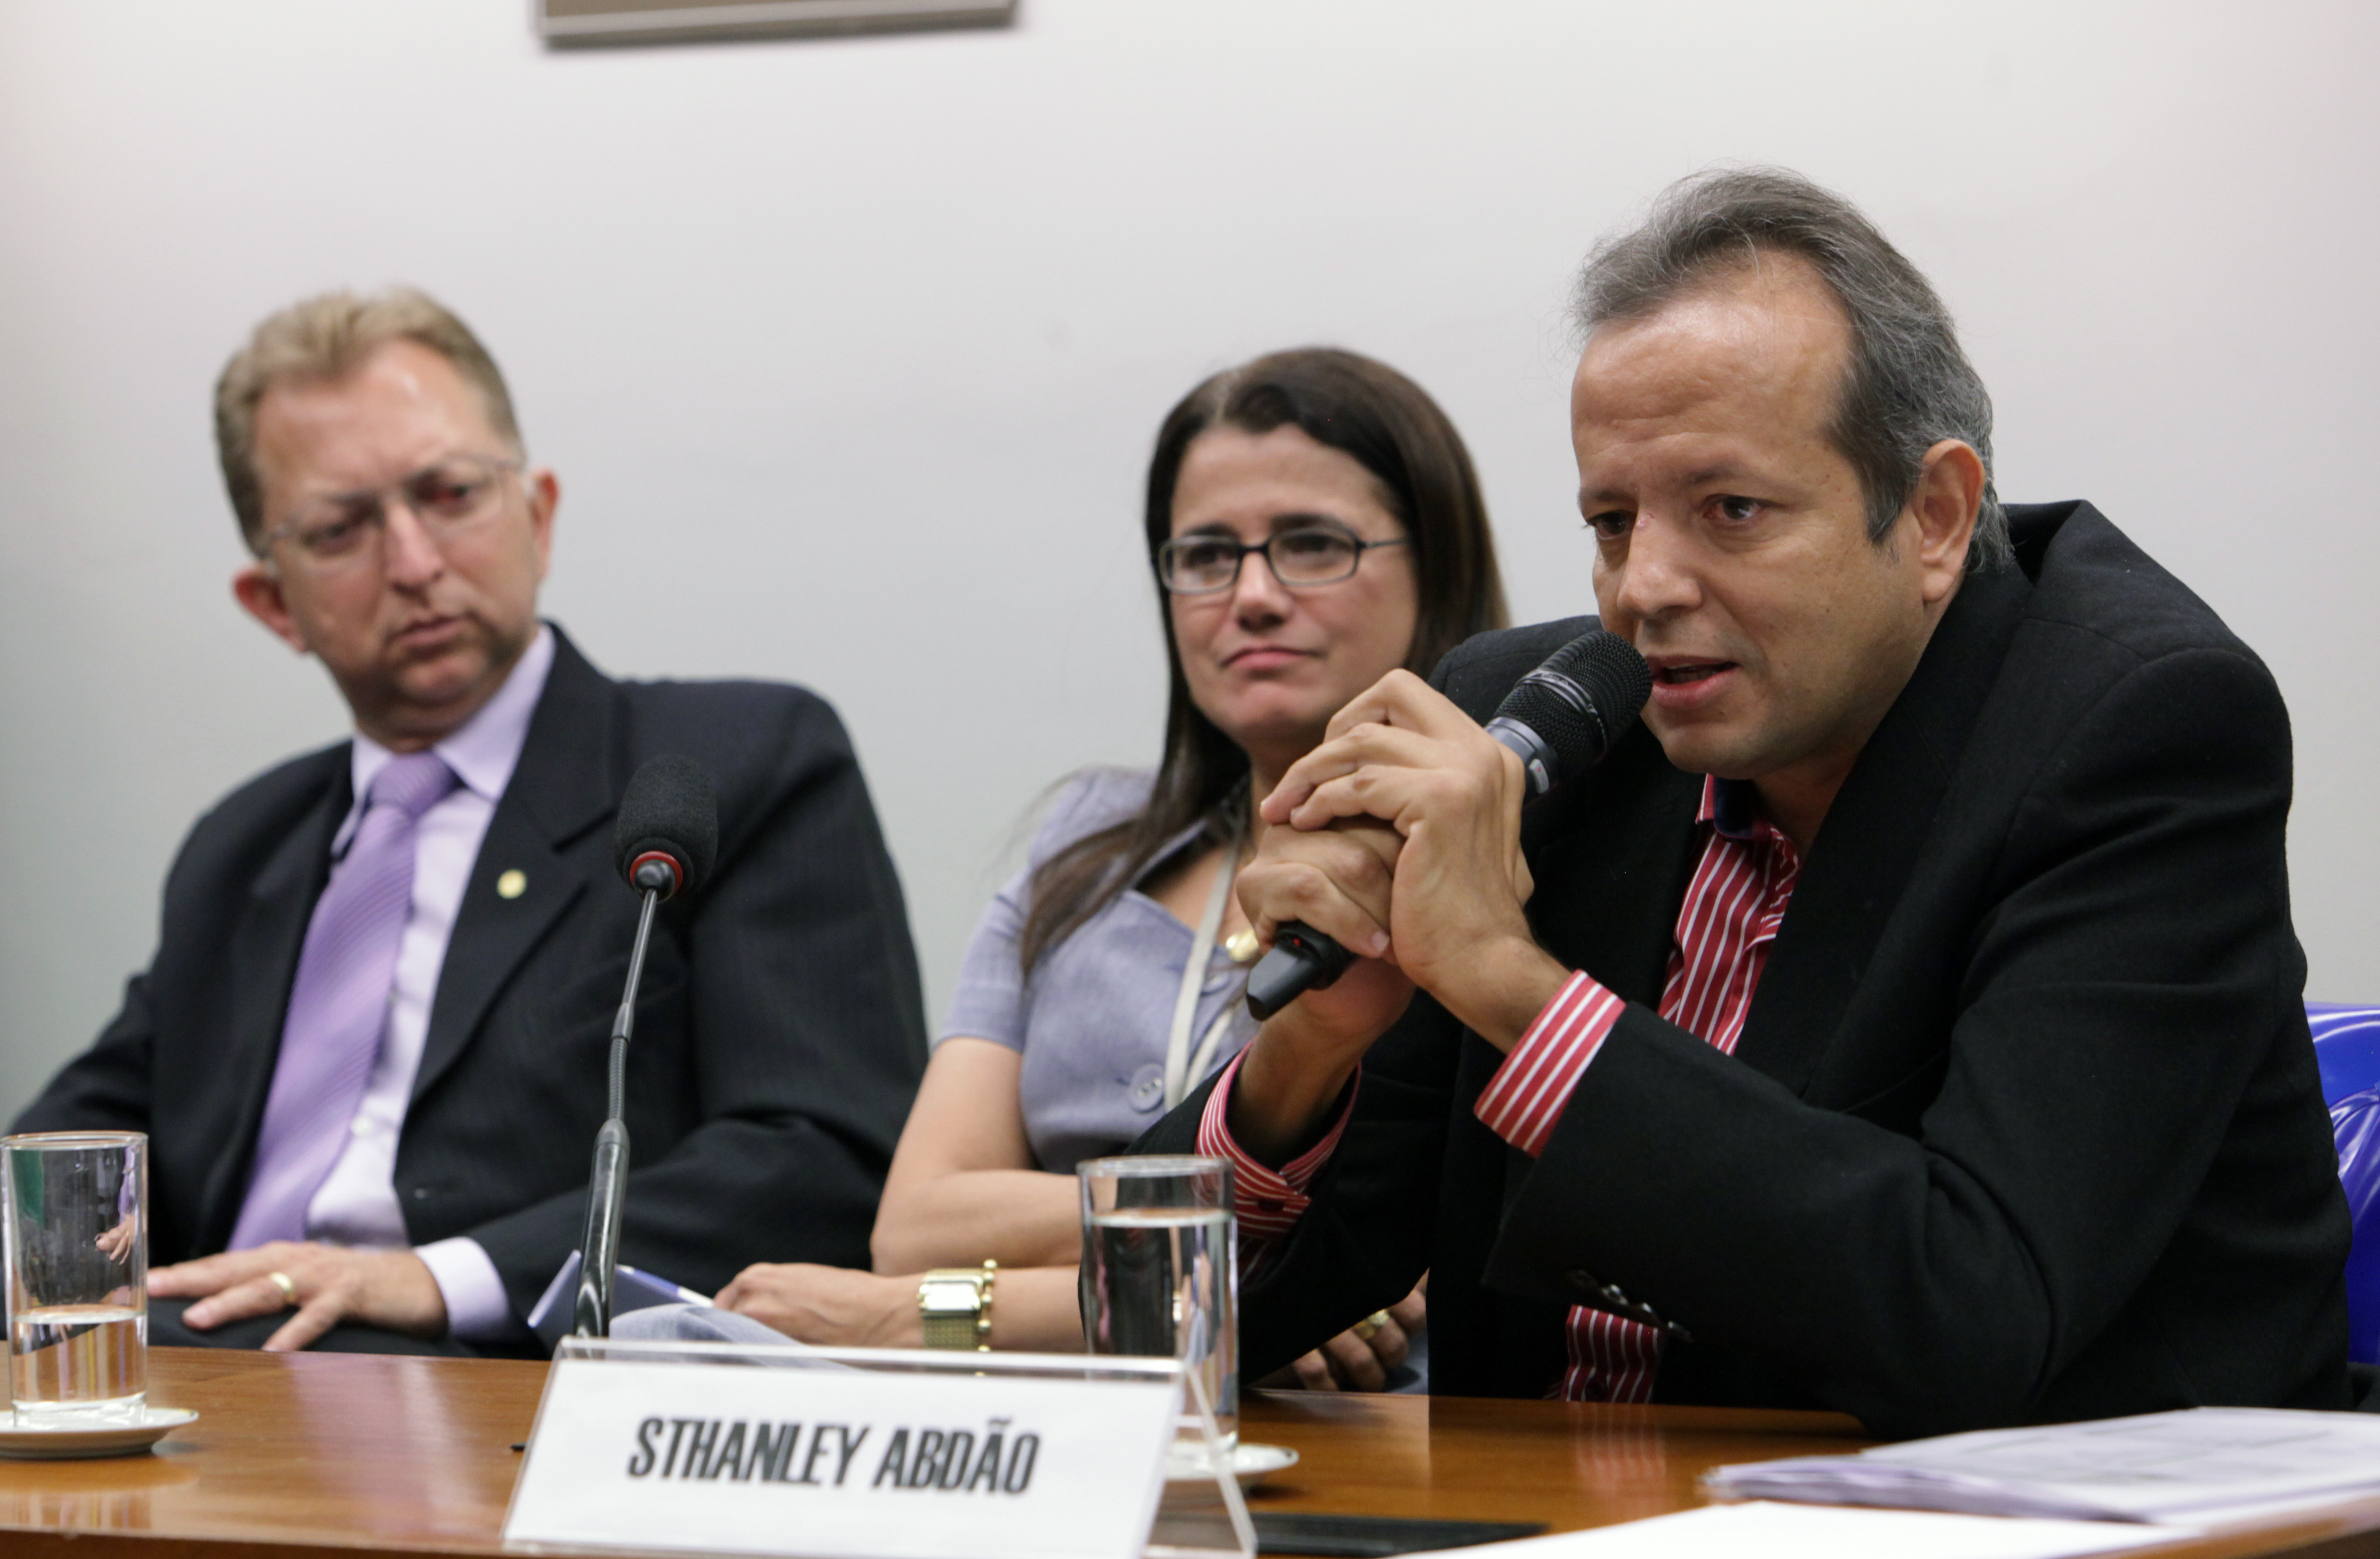 Sthanley Abdão trouxe sua experiência de ser portador de ELA | Foto: Antonio Araujo/ Câmara dos Deputados